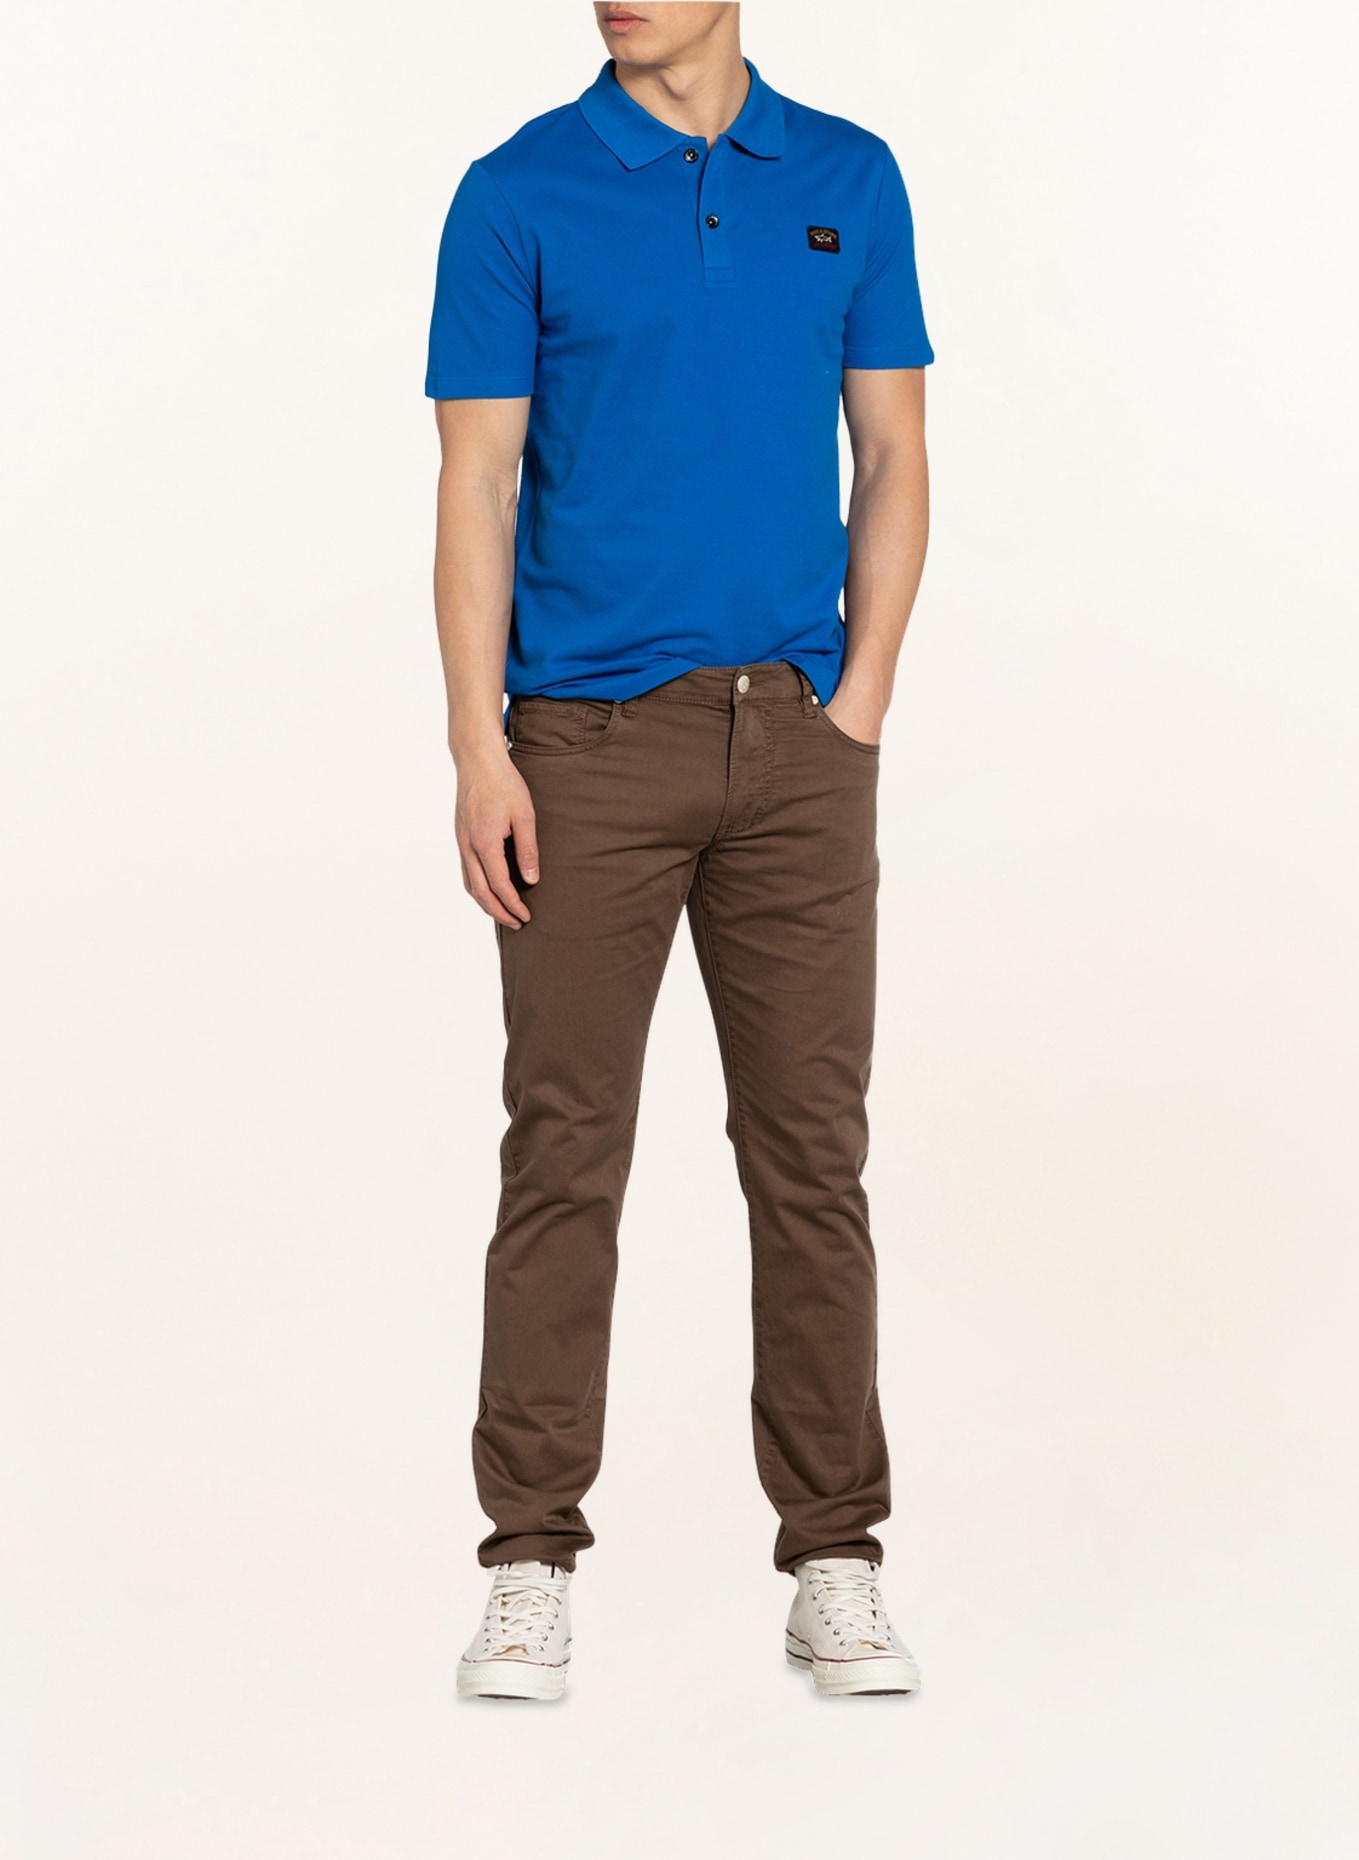 PAUL & SHARK Piqué-Poloshirt, Farbe: BLAU (Bild 2)